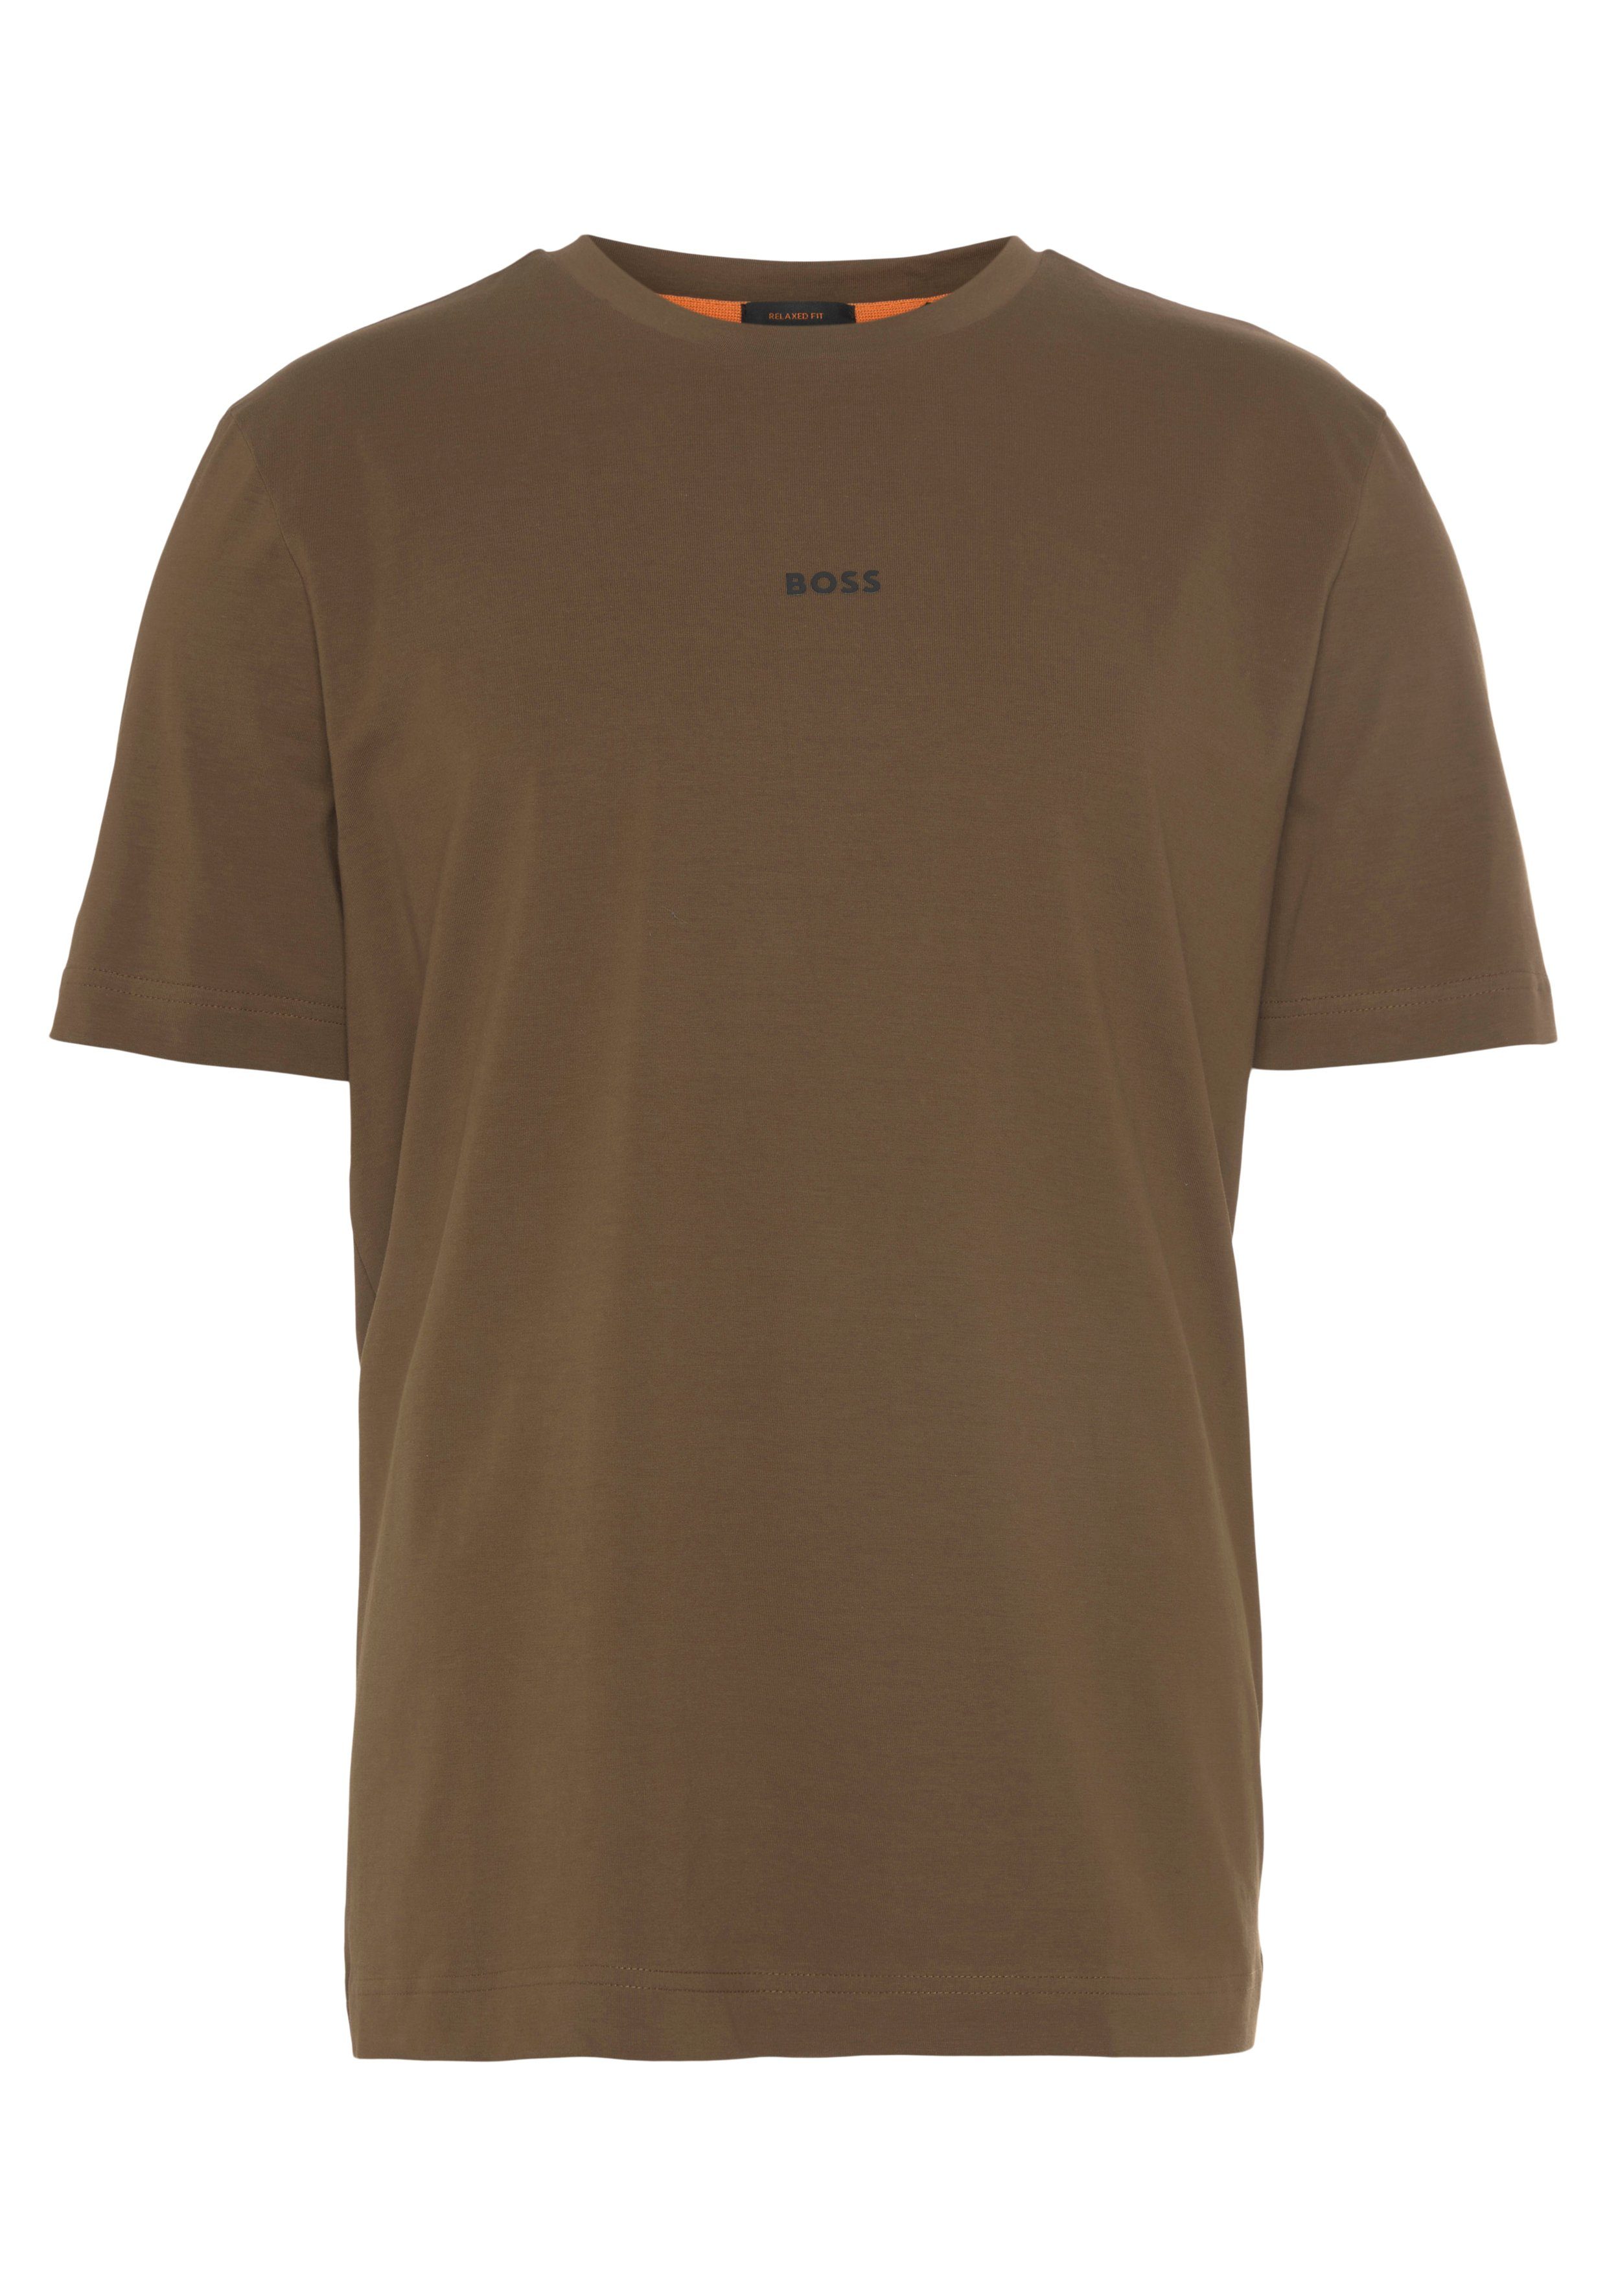 elastischen Aus der ORANGE Brust, TChup Kurzarmshirt mit BOSS einer BOSS-Logodruck auf Baumwollmischung